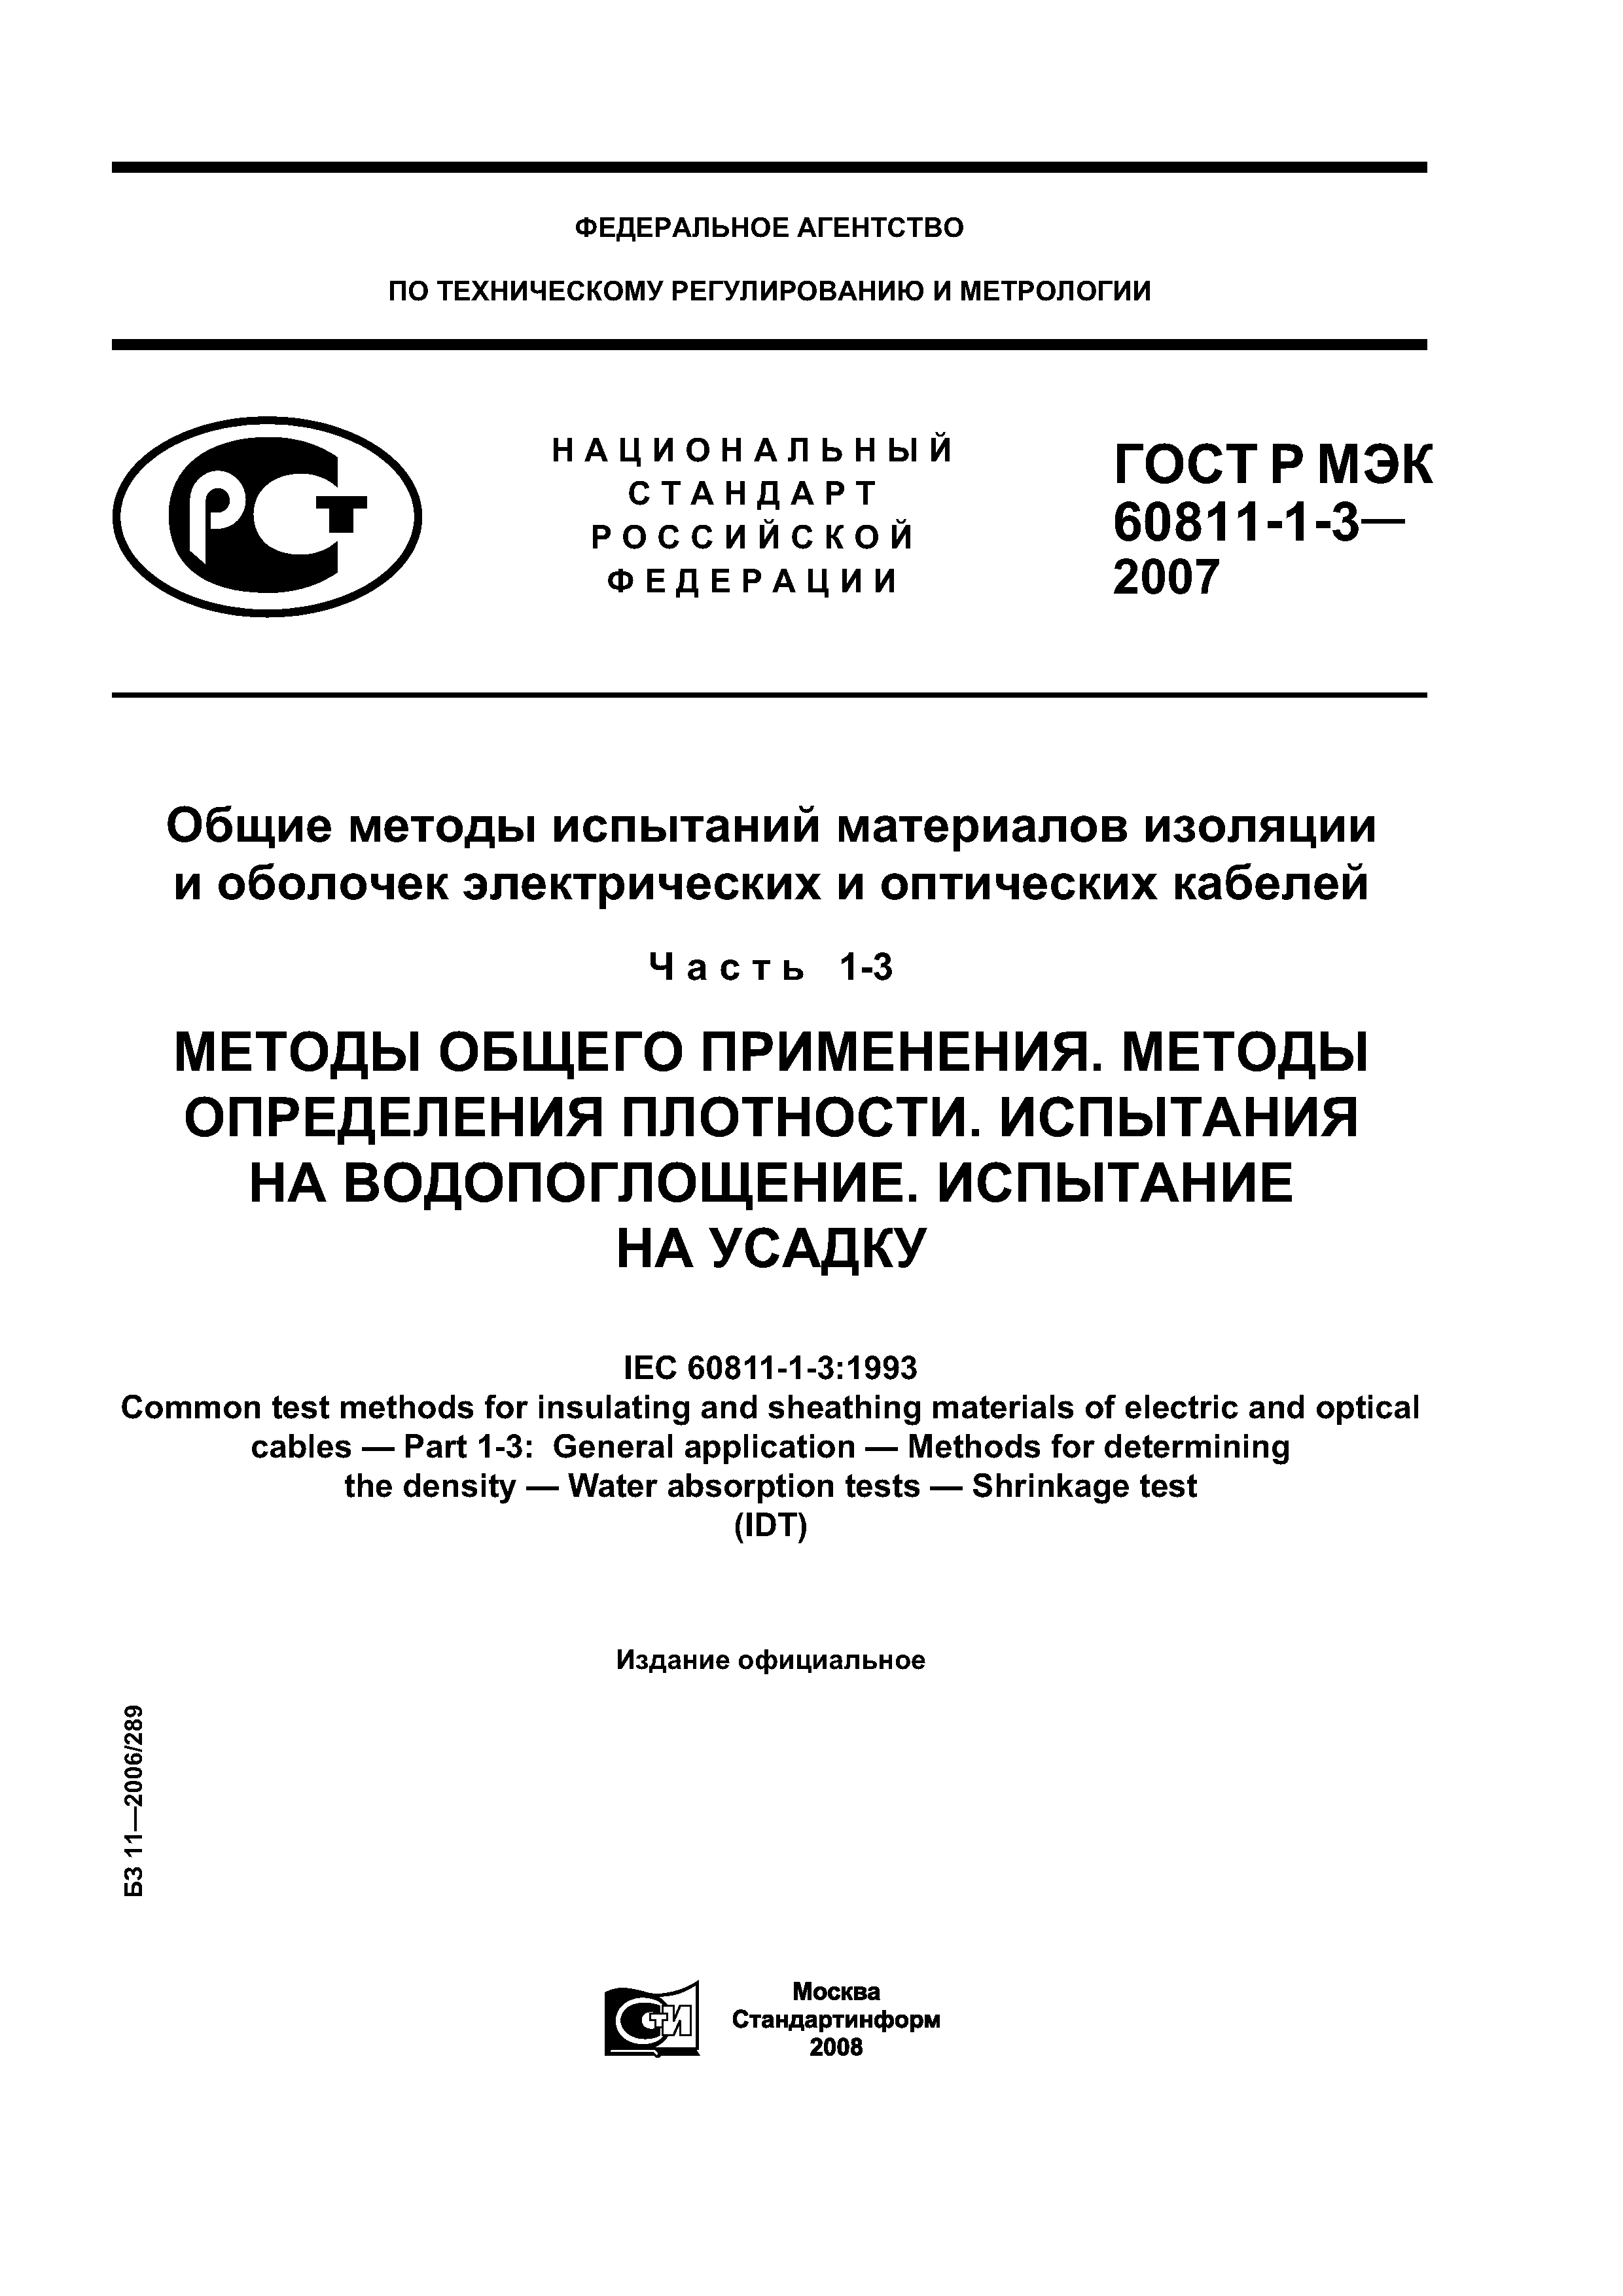 ГОСТ Р МЭК 60811-1-3-2007